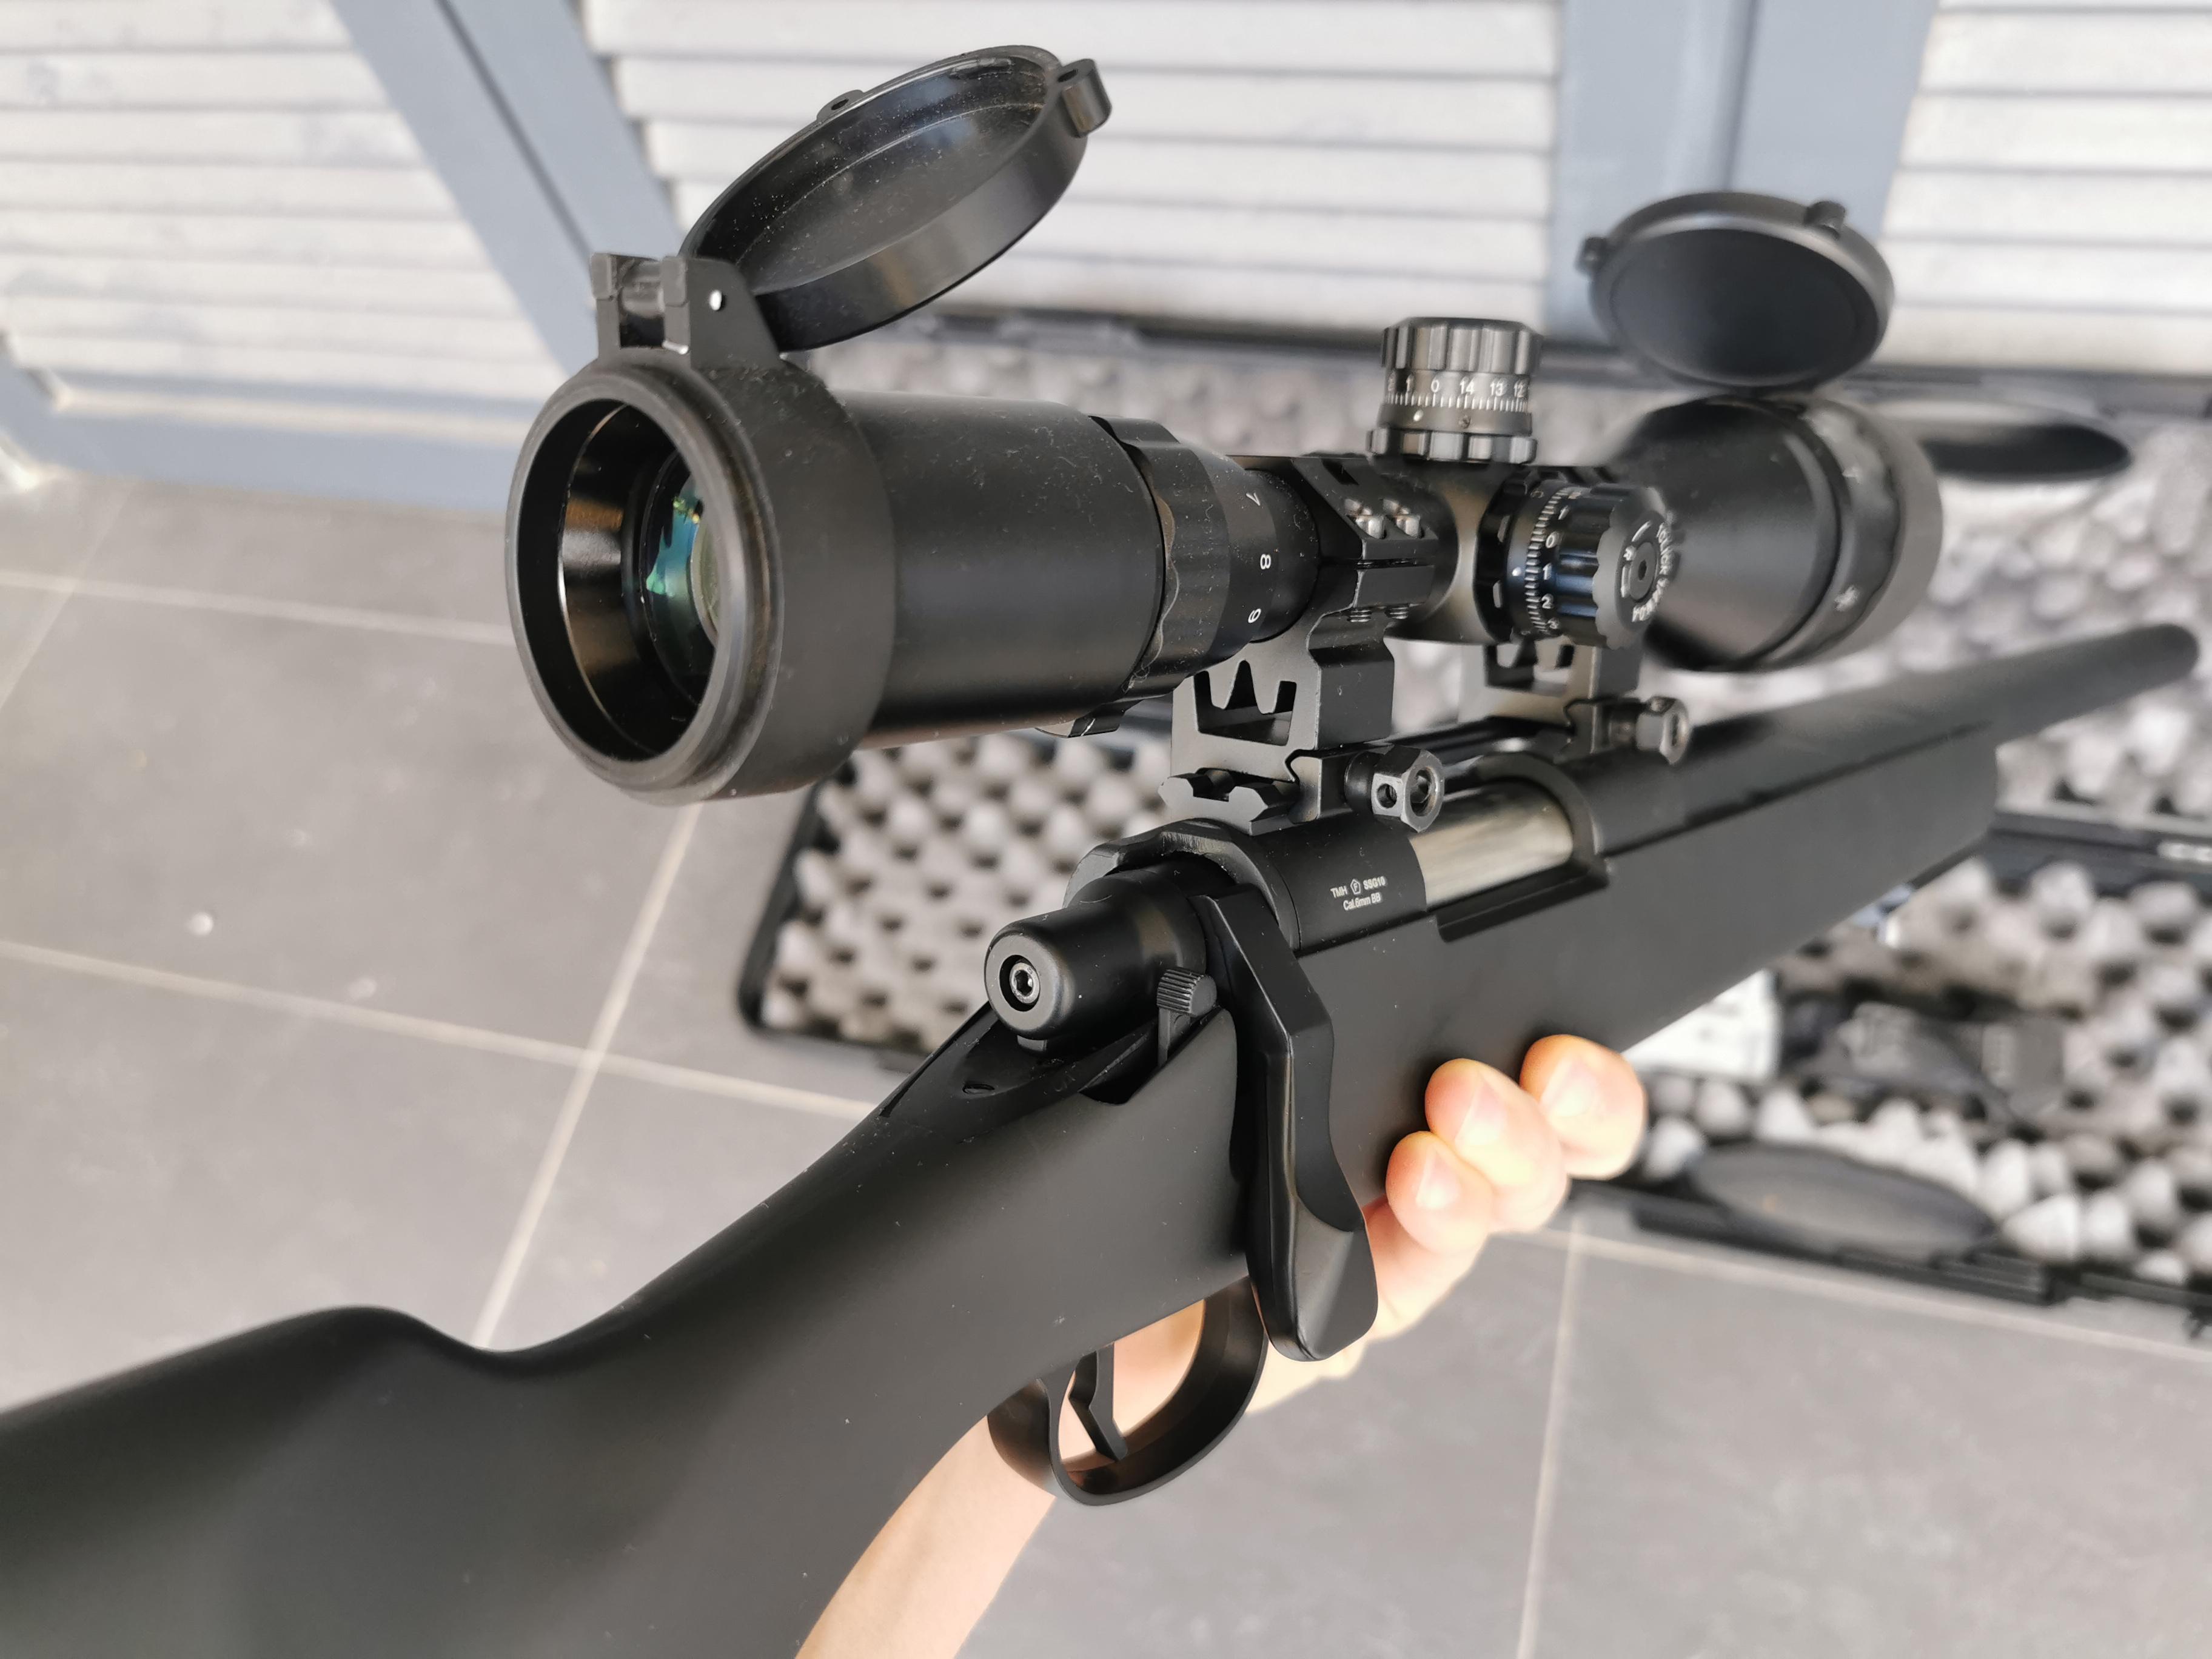 SSG10 A1 Airsoft Sniper Rifle - Novritsch - Quimera Airsoft